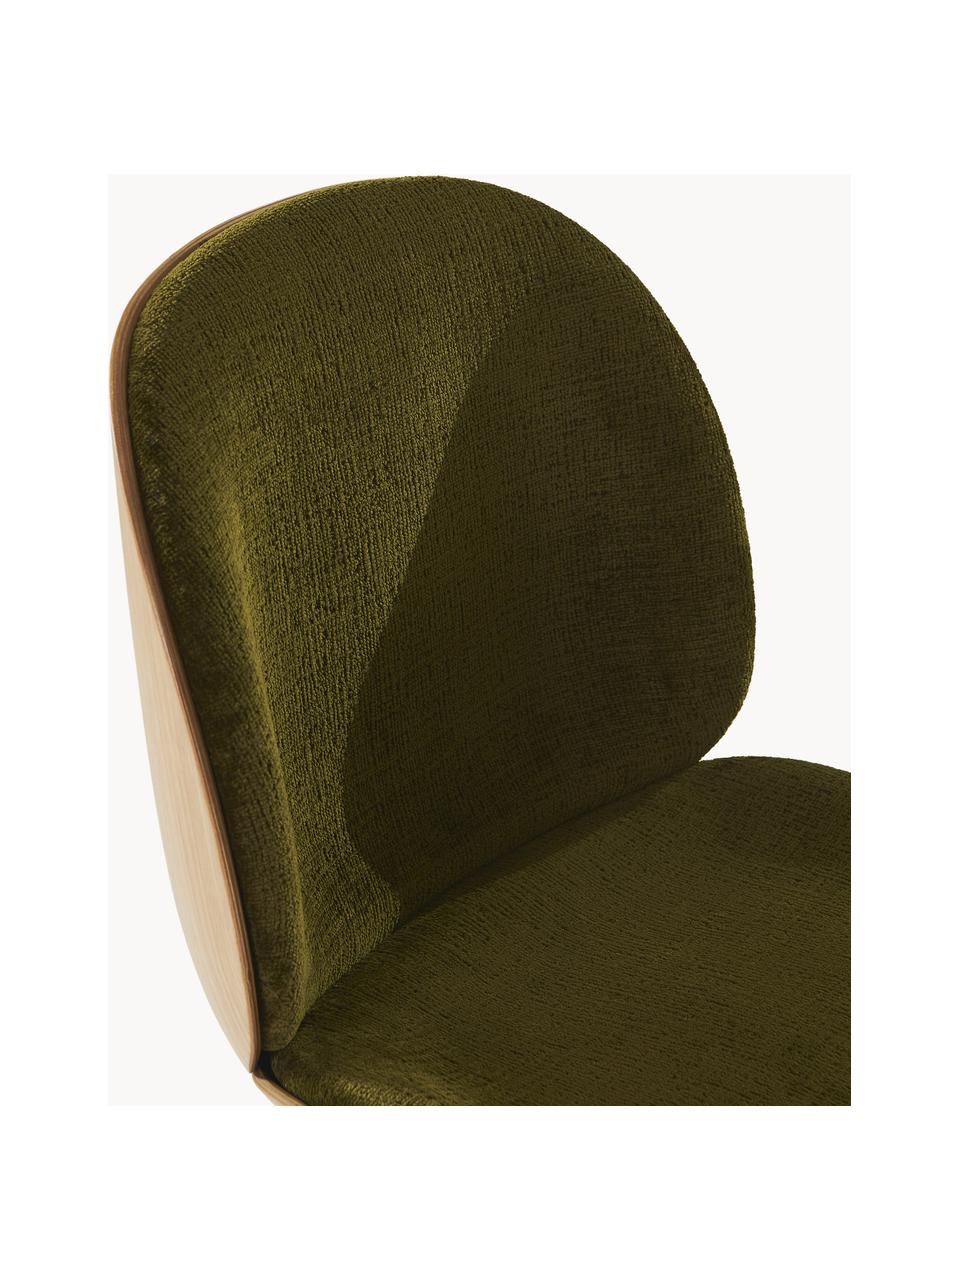 Krzesło tapicerowane z aksamitu Beetle, Tapicerka: aksamit (100% poliester), Nogi: stal powlekana, Oliwkowy zielony, drewno dębowe, czarny błyszczący, S 56 x G 58 cm